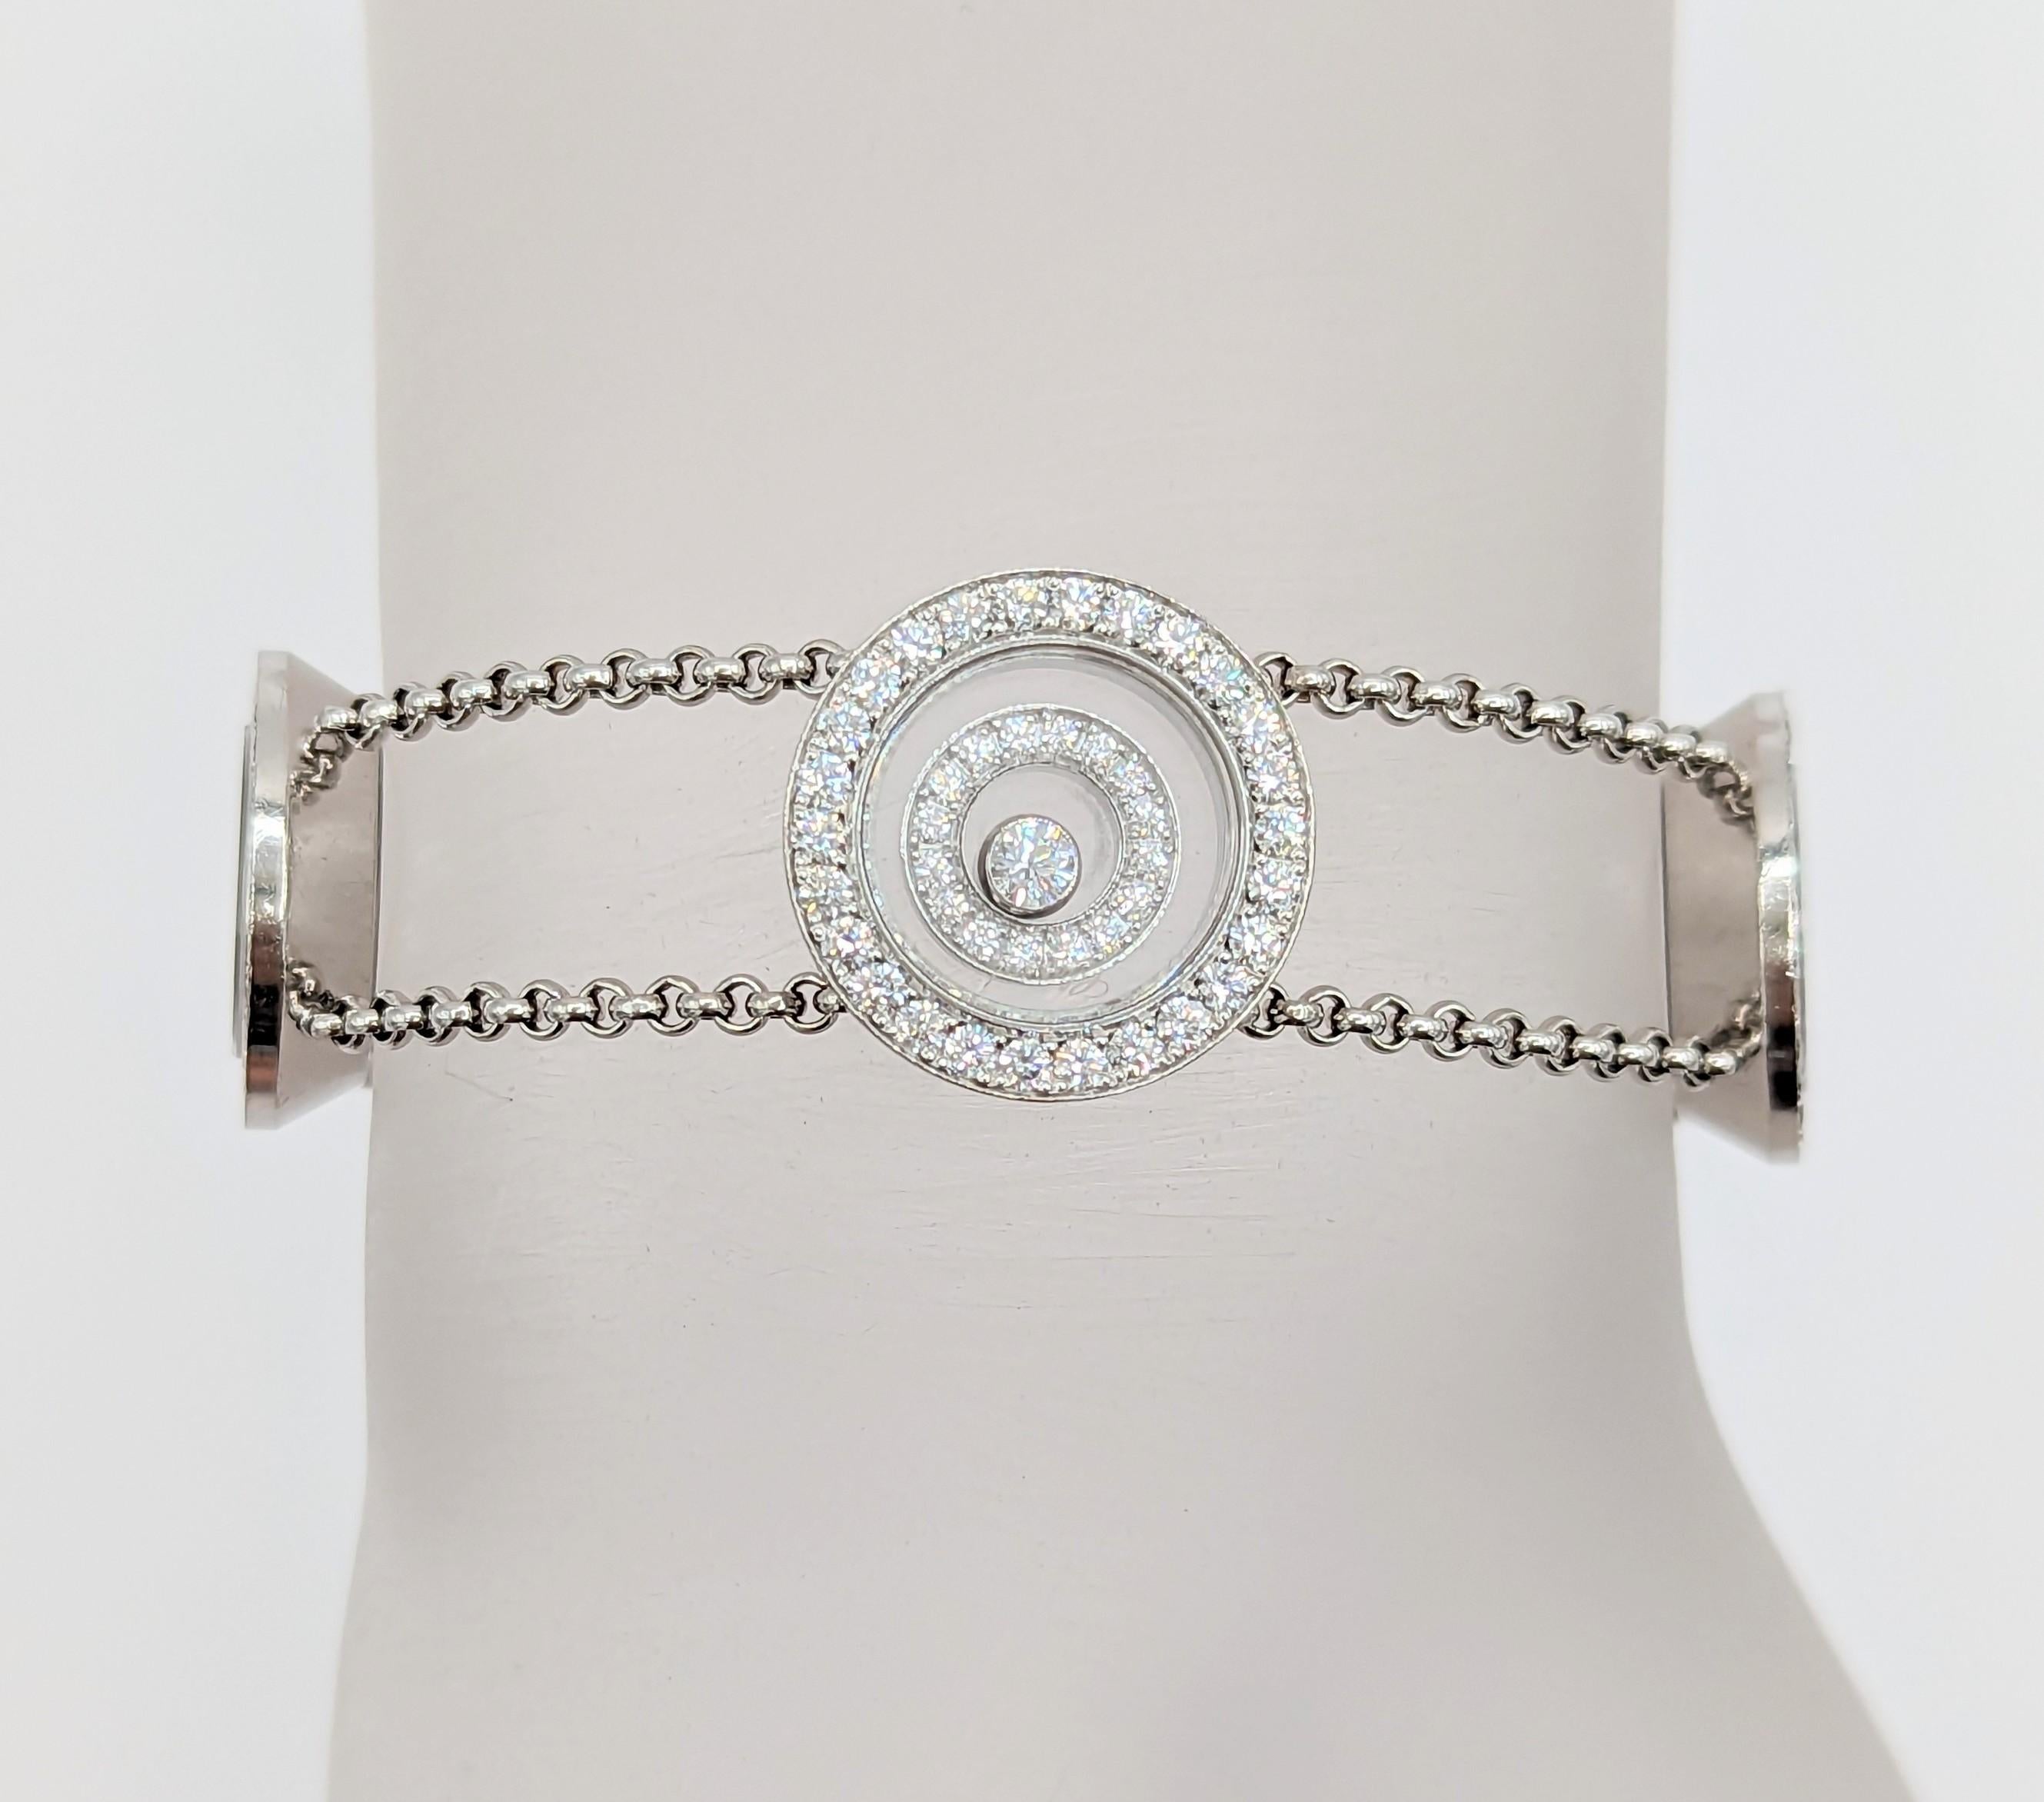 Gorgeous estate Chopard white diamond bracelet handmade in 18k white gold.  Length is 8